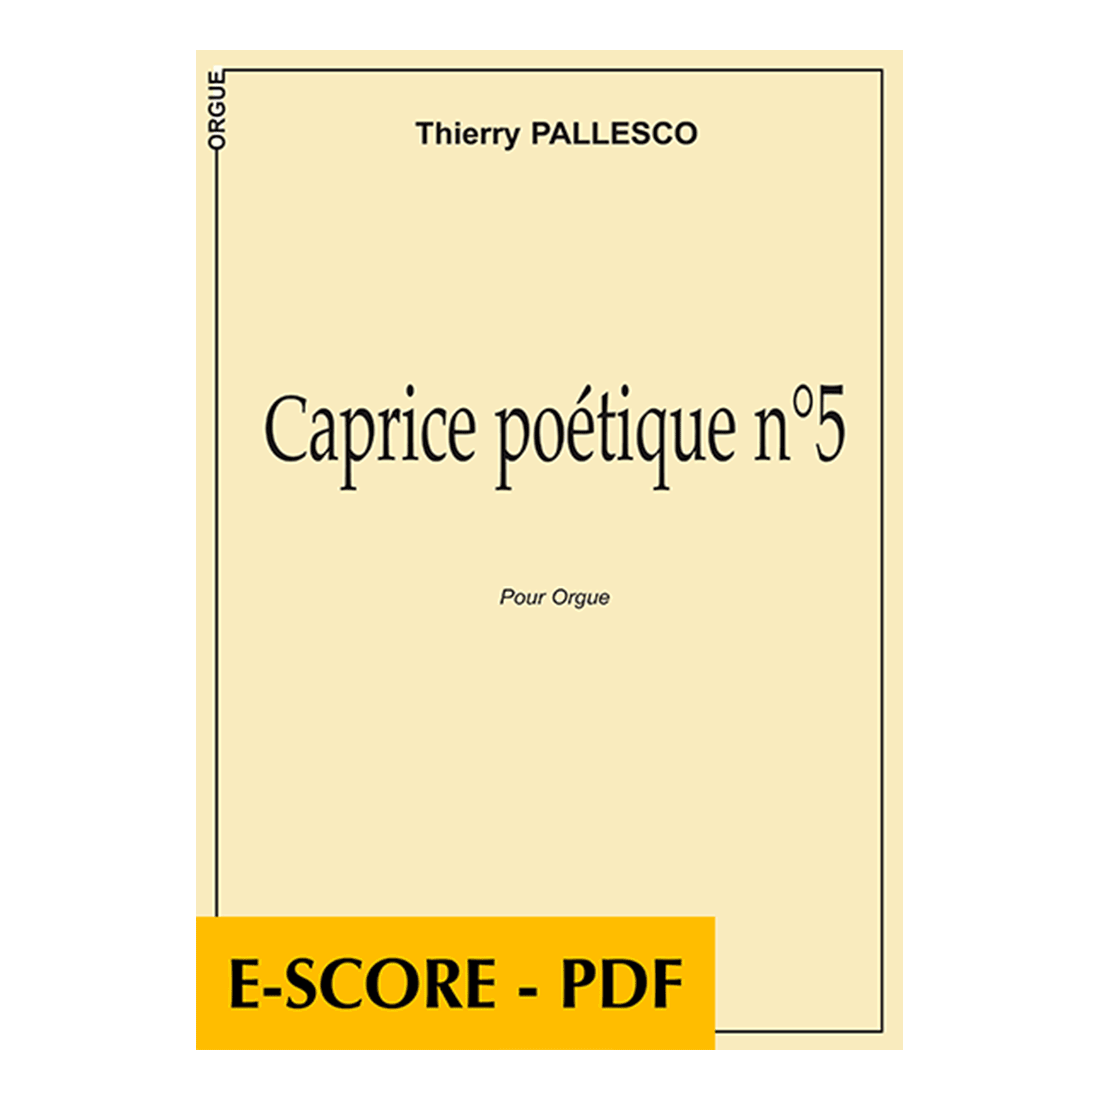 Caprice poétique n°5 for organ - E-score PDF